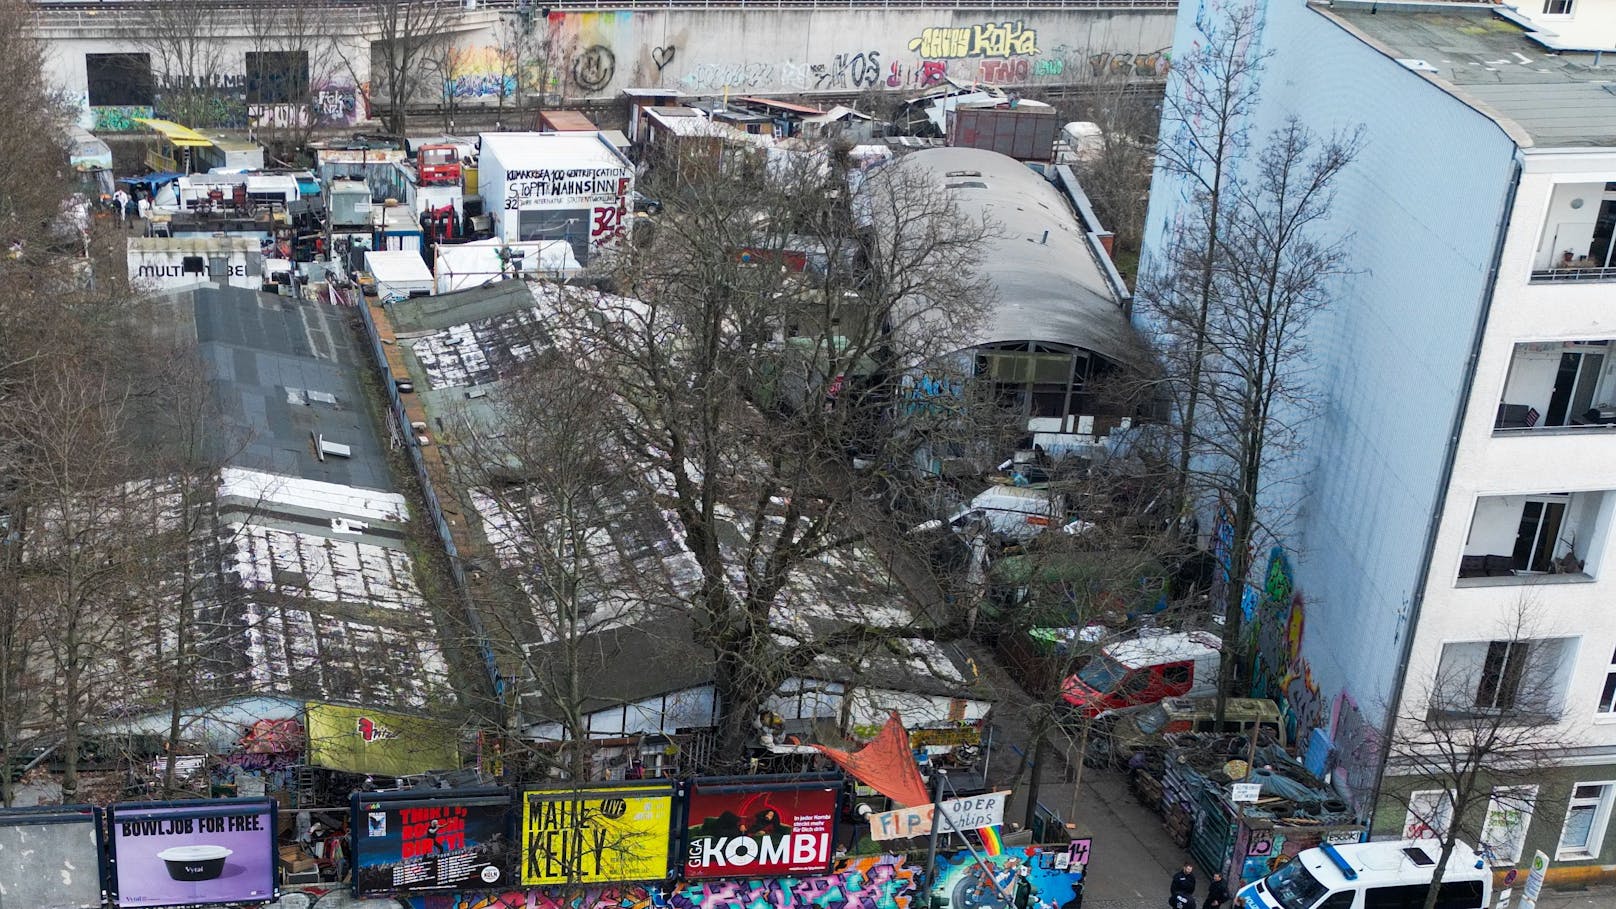 Auf diesem Bauwagenplatz mitten in Berlin soll der RAF-Terrorist gelebt haben. Sein Bauwagen mit gelben Dach ist oben links zu sehen.&nbsp;&nbsp;